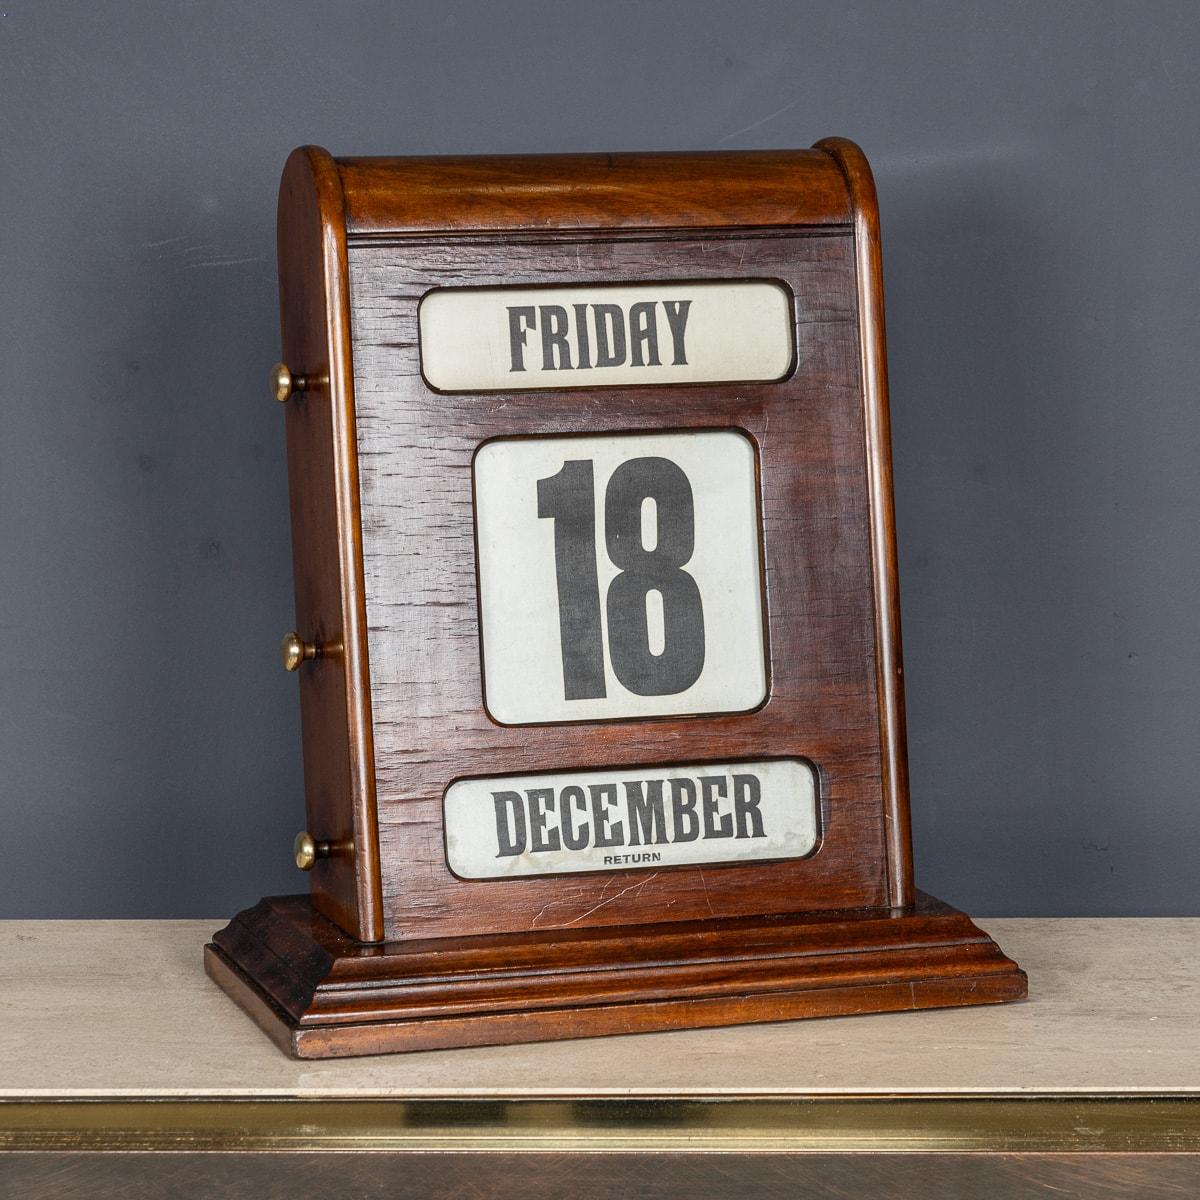 Vintage Tischkalender aus der Mitte des 20. Jahrhunderts, aus Mahagoni und Messing. Mit den drei Knöpfen auf jeder Seite lassen sich hinter drei verglasten Blenden der Tag, das Datum und der Monat vor- und zurückspulen. Ein echter Gesprächsstoff und